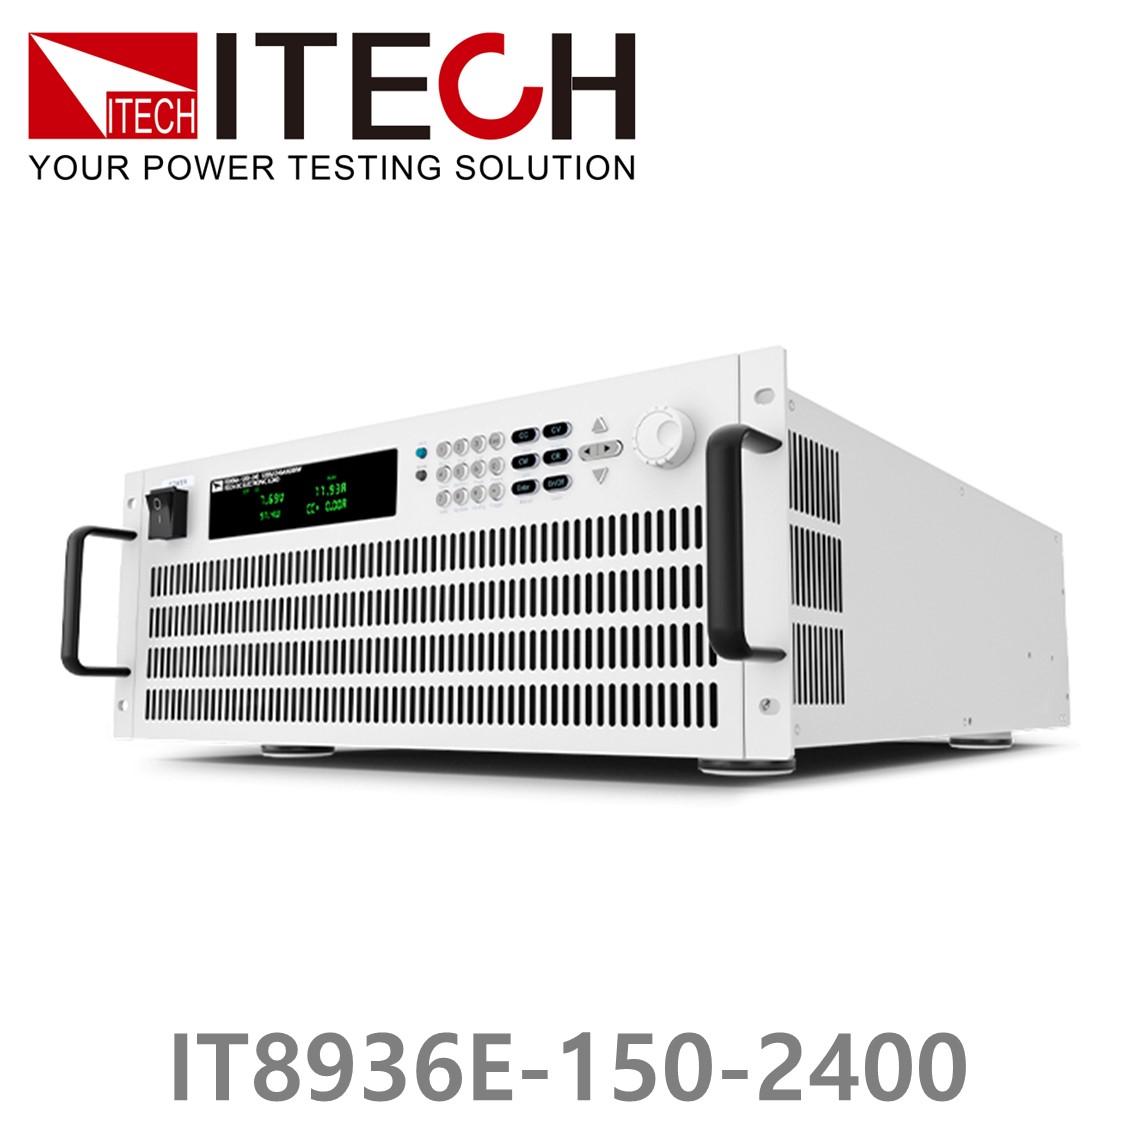 [ ITECH ] IT8936E-150-2400  고성능 고전력 DC 전자로드 150V/2400A/36kW (27U)